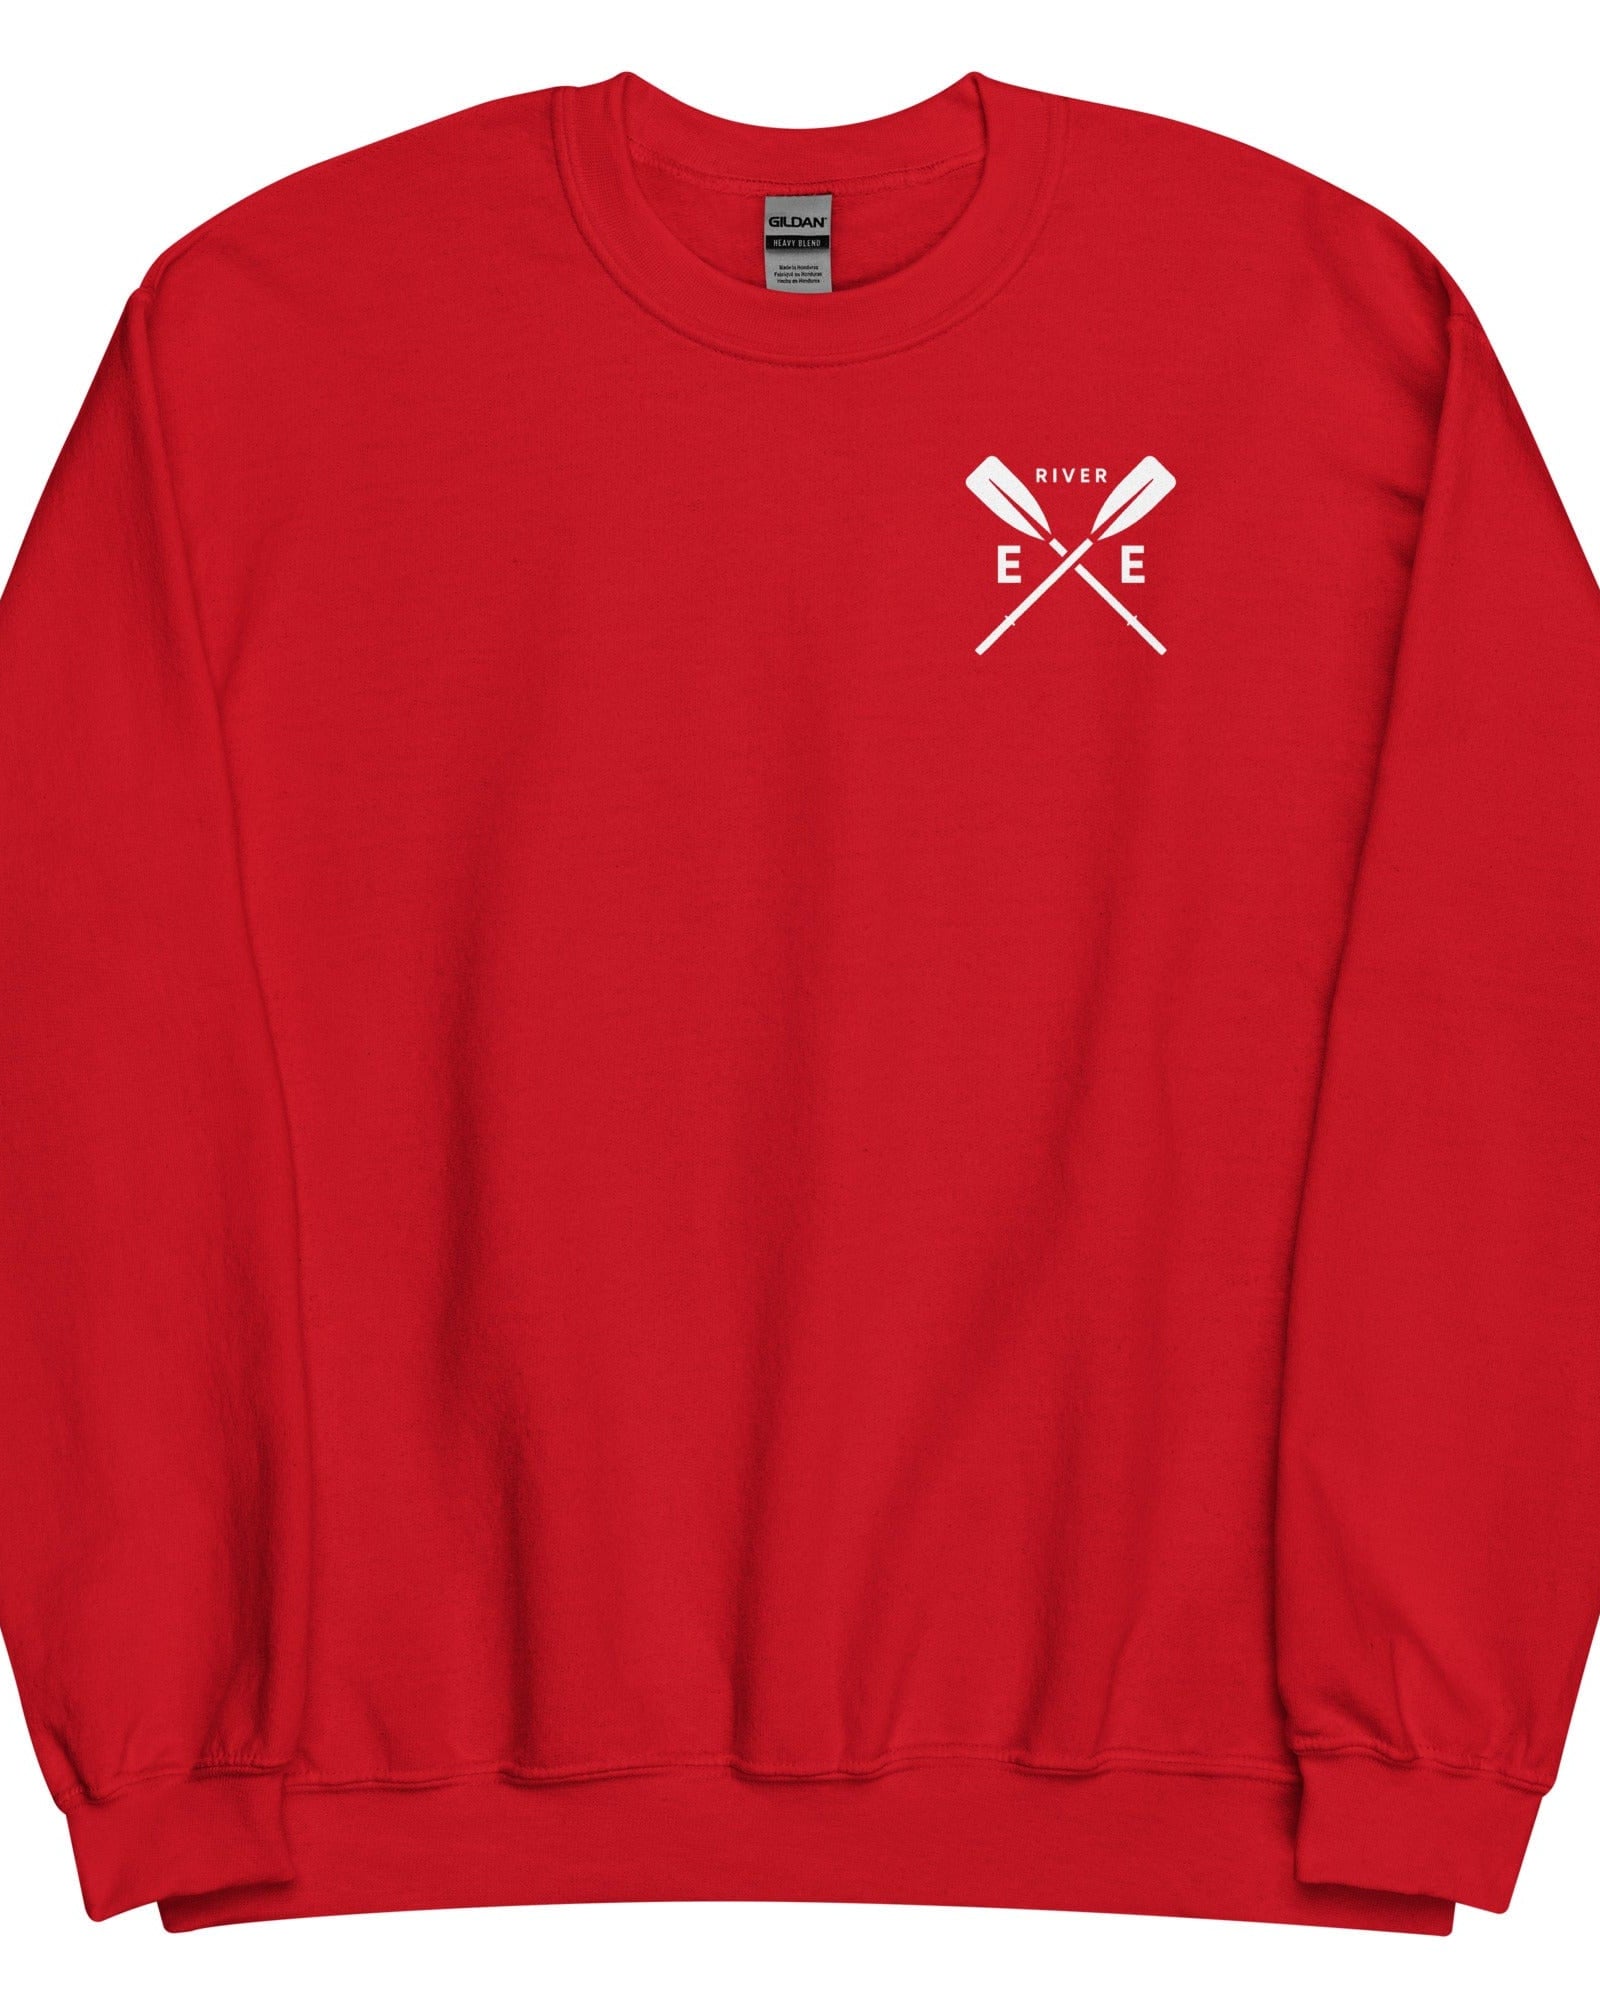 River Exe Sweatshirt Jumper | Exeter Gift Shop Red / S Sweatshirt Jolly & Goode